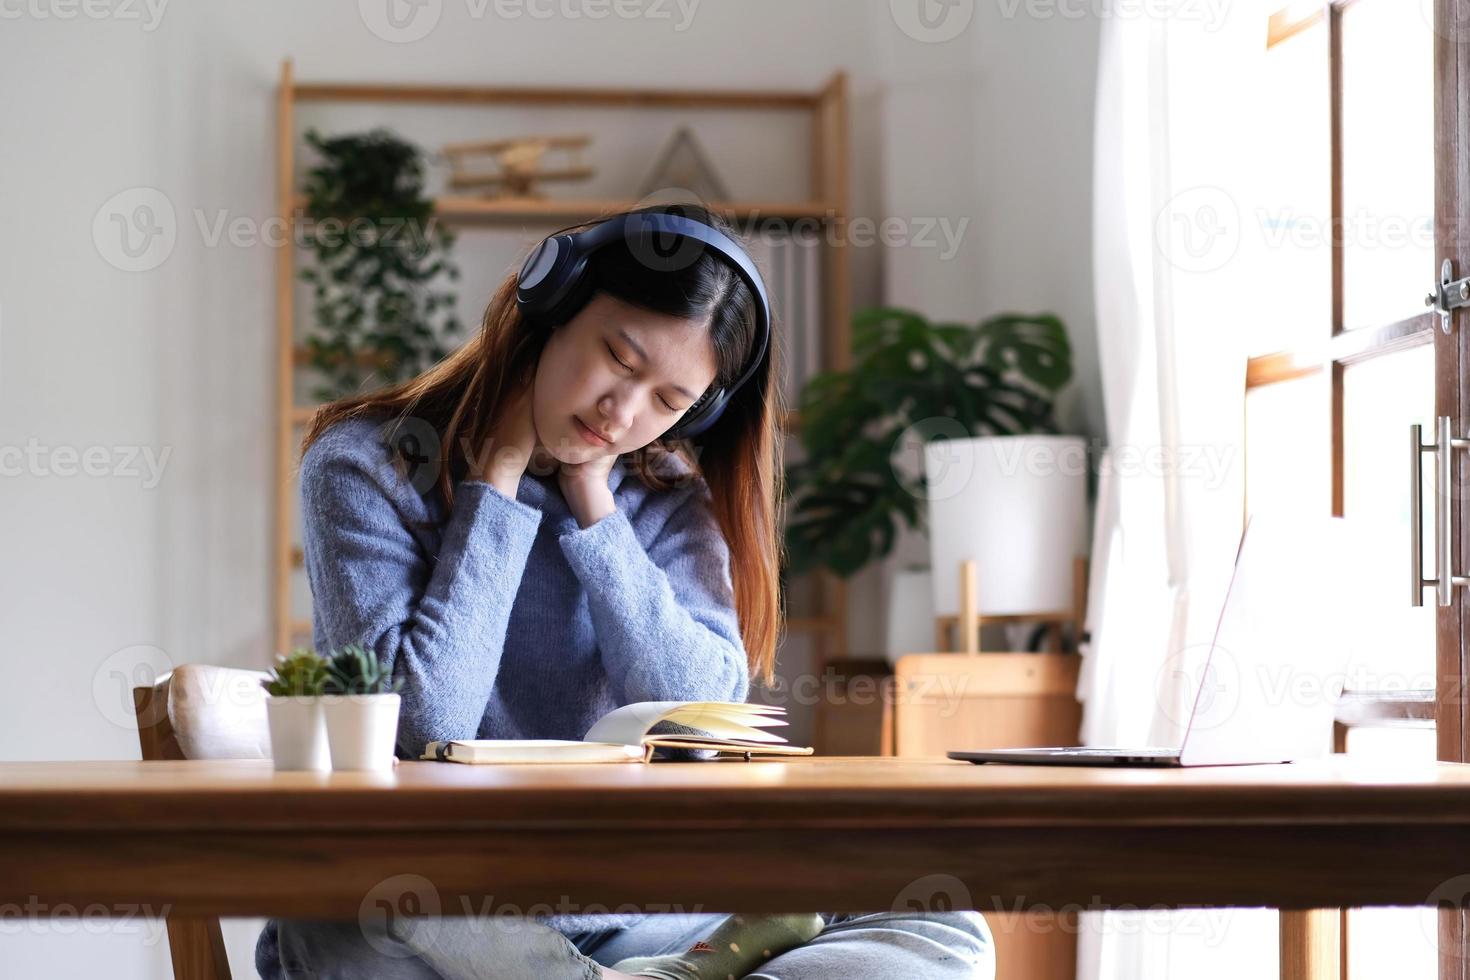 les belles femmes asiatiques se fatiguent après avoir étudié en ligne pendant longtemps, elle étudie en ligne. le concept d'apprentissage en ligne en raison de l'épidémie de covid-19 pour prévenir une épidémie en classe. photo